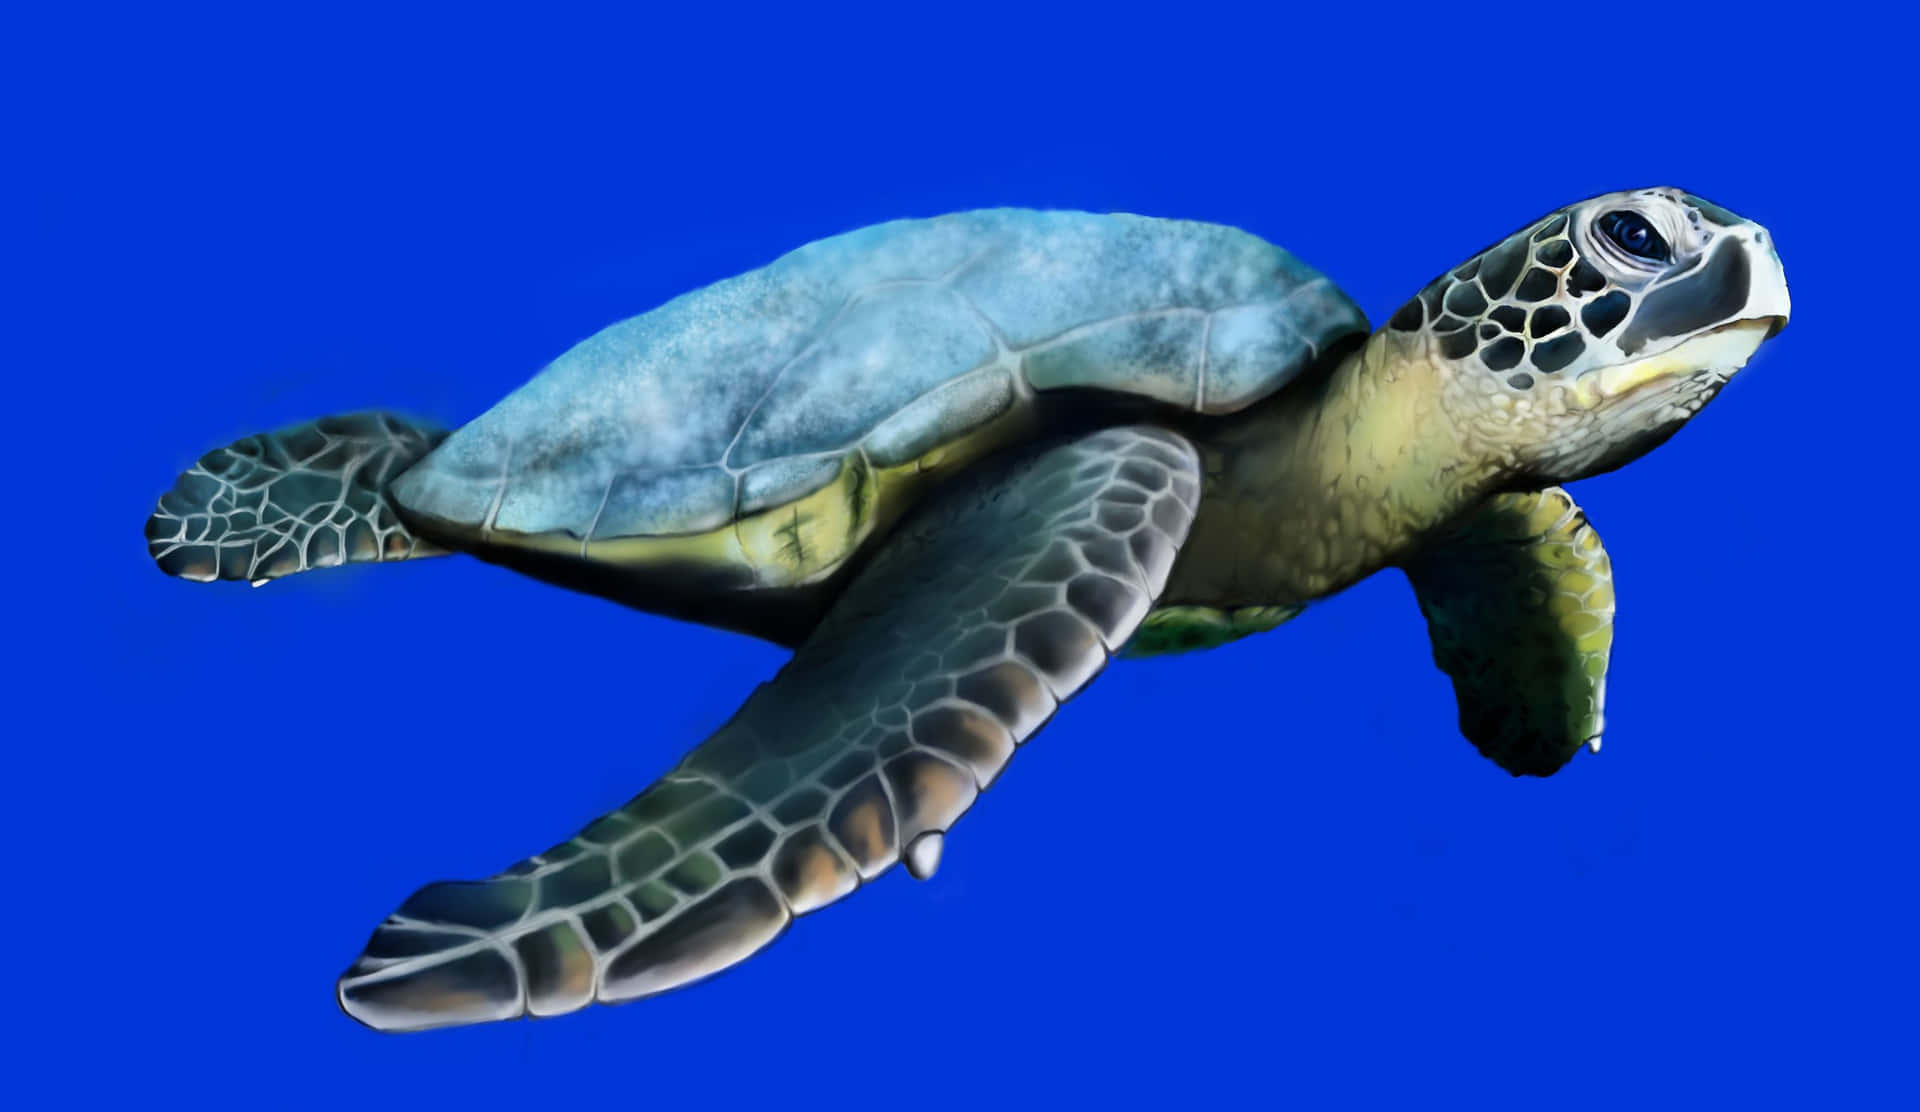 Enhavssköldpadda Navigerar Elegant Genom De Varma Havsvattnen.